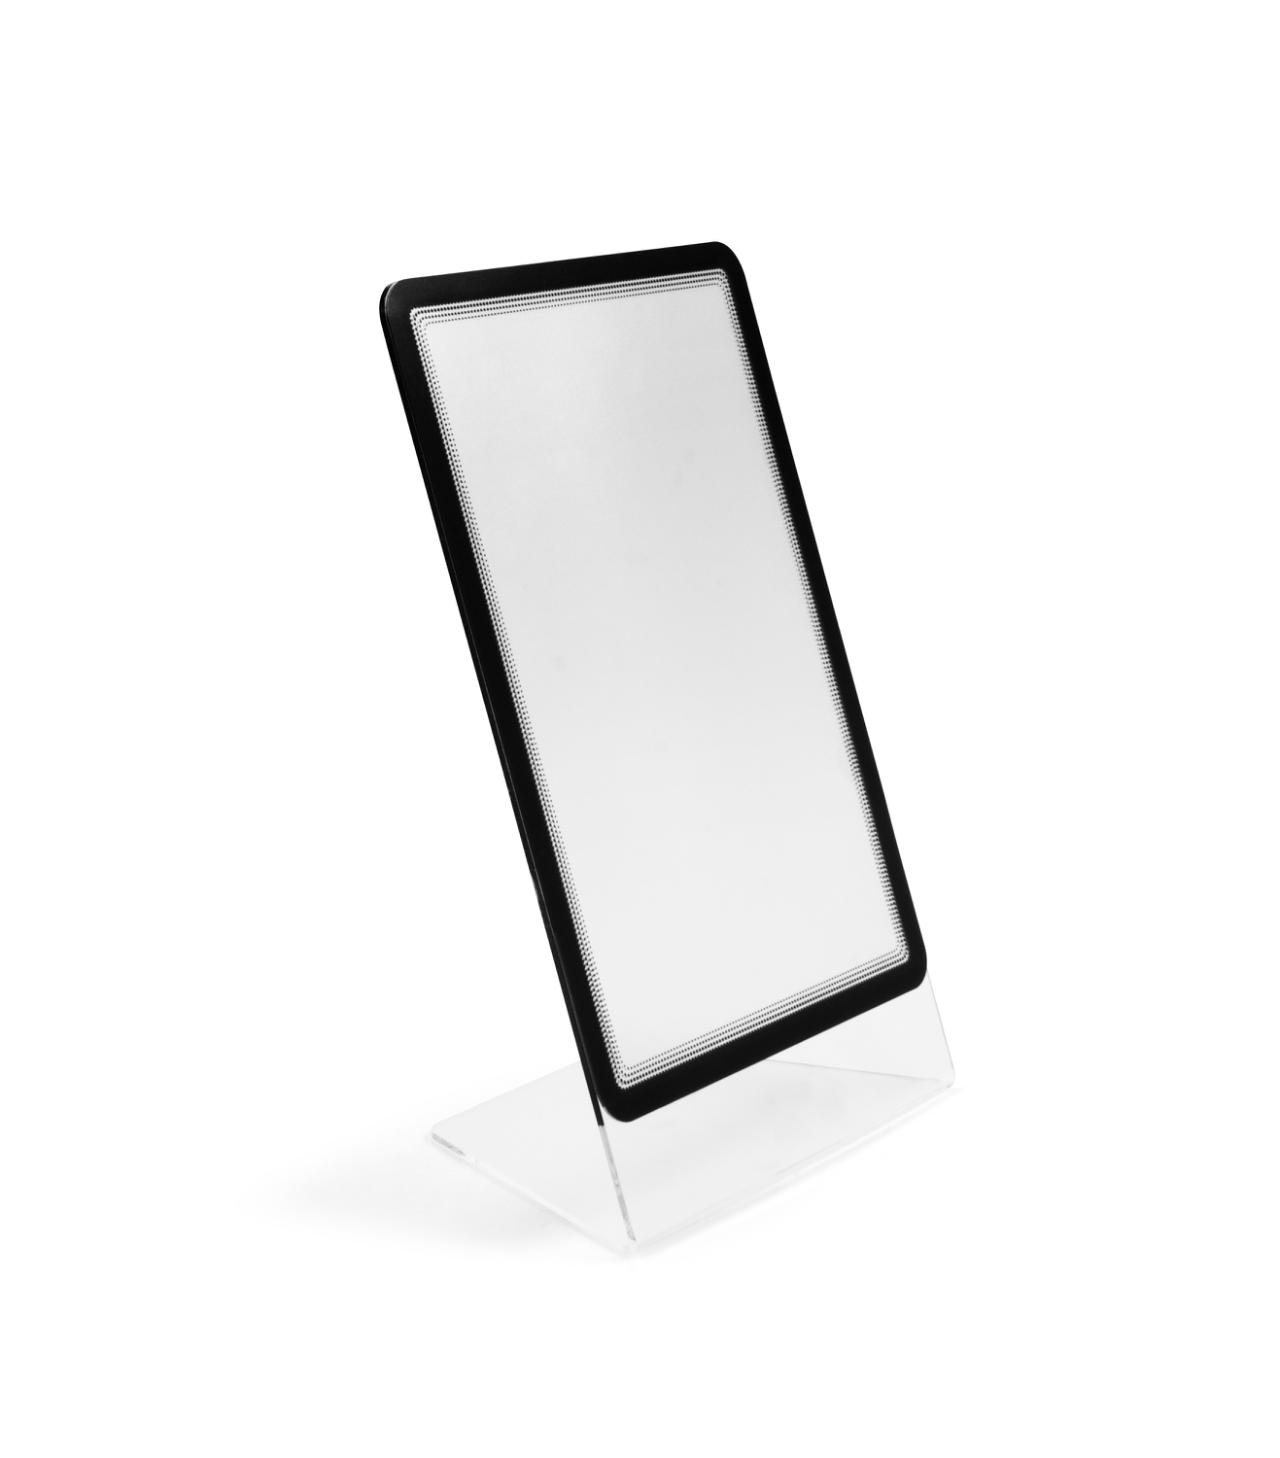 Acrylic Table Top Sign Holder with A4 Magneto Frame Display Pocket, Slanted L-Shape, Portrait/Landscape